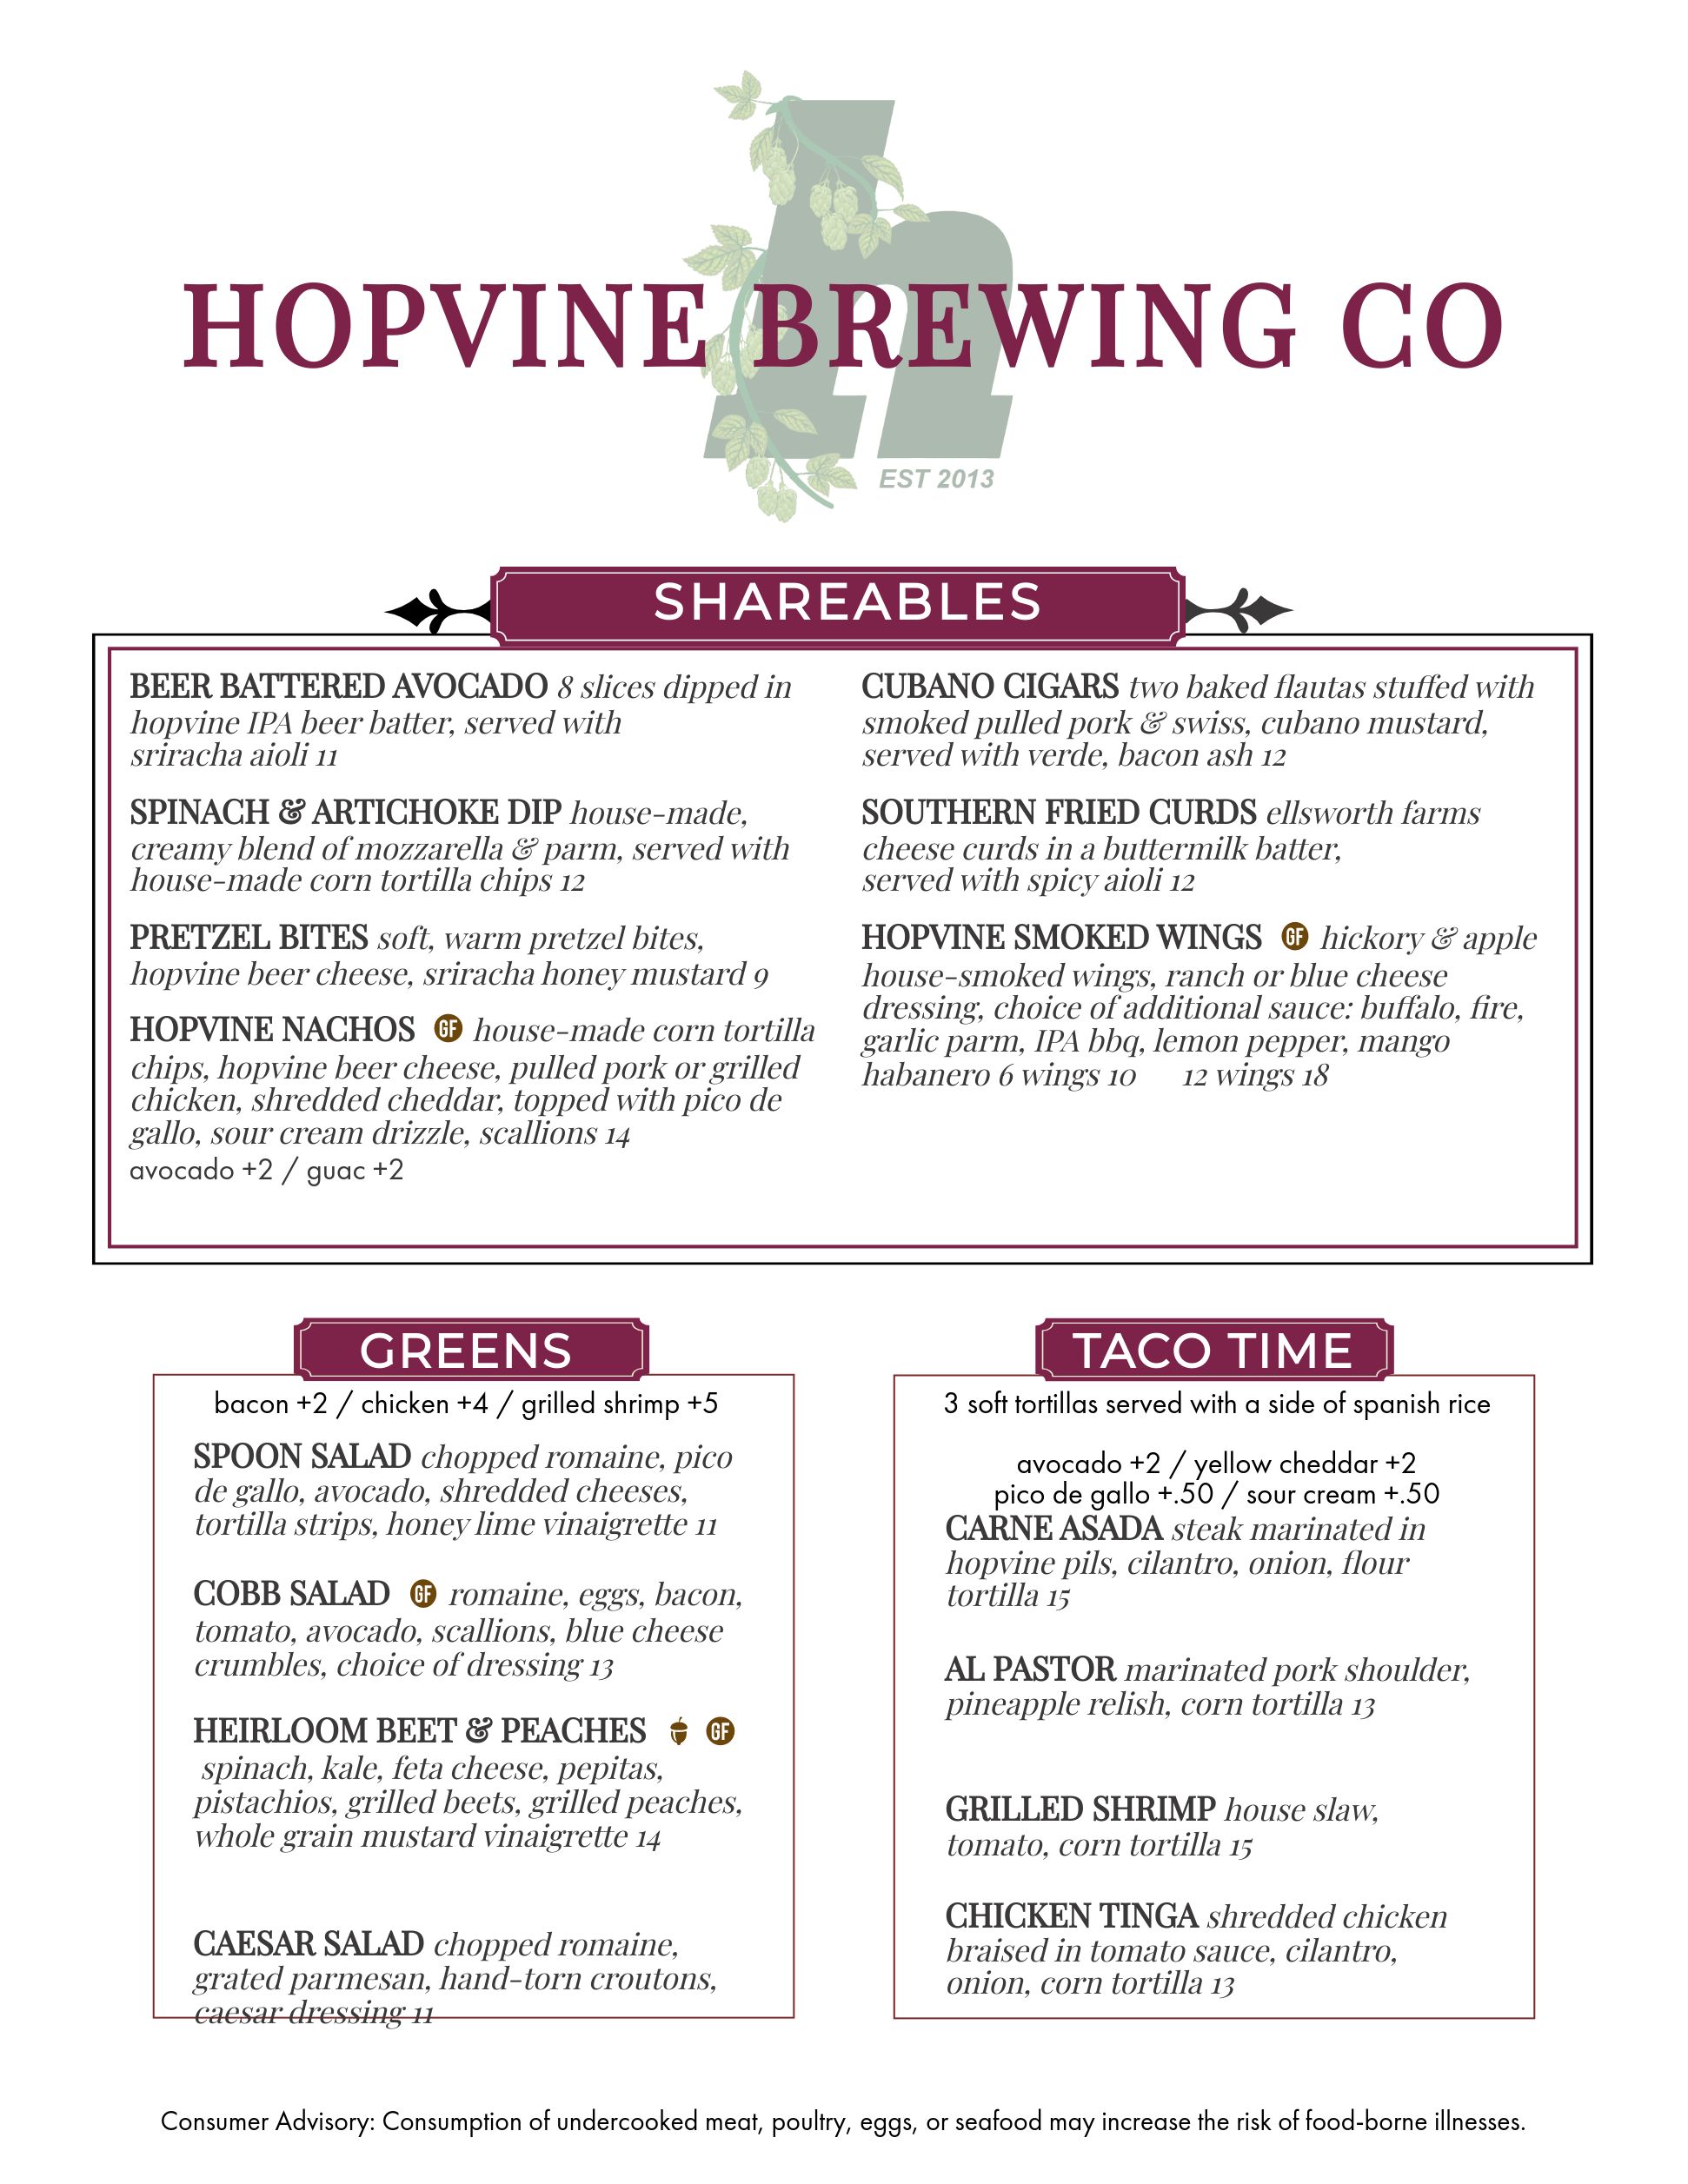 Hopvine Brewing Company 4030 Fox Valley Center Dr, Aurora, IL 60504